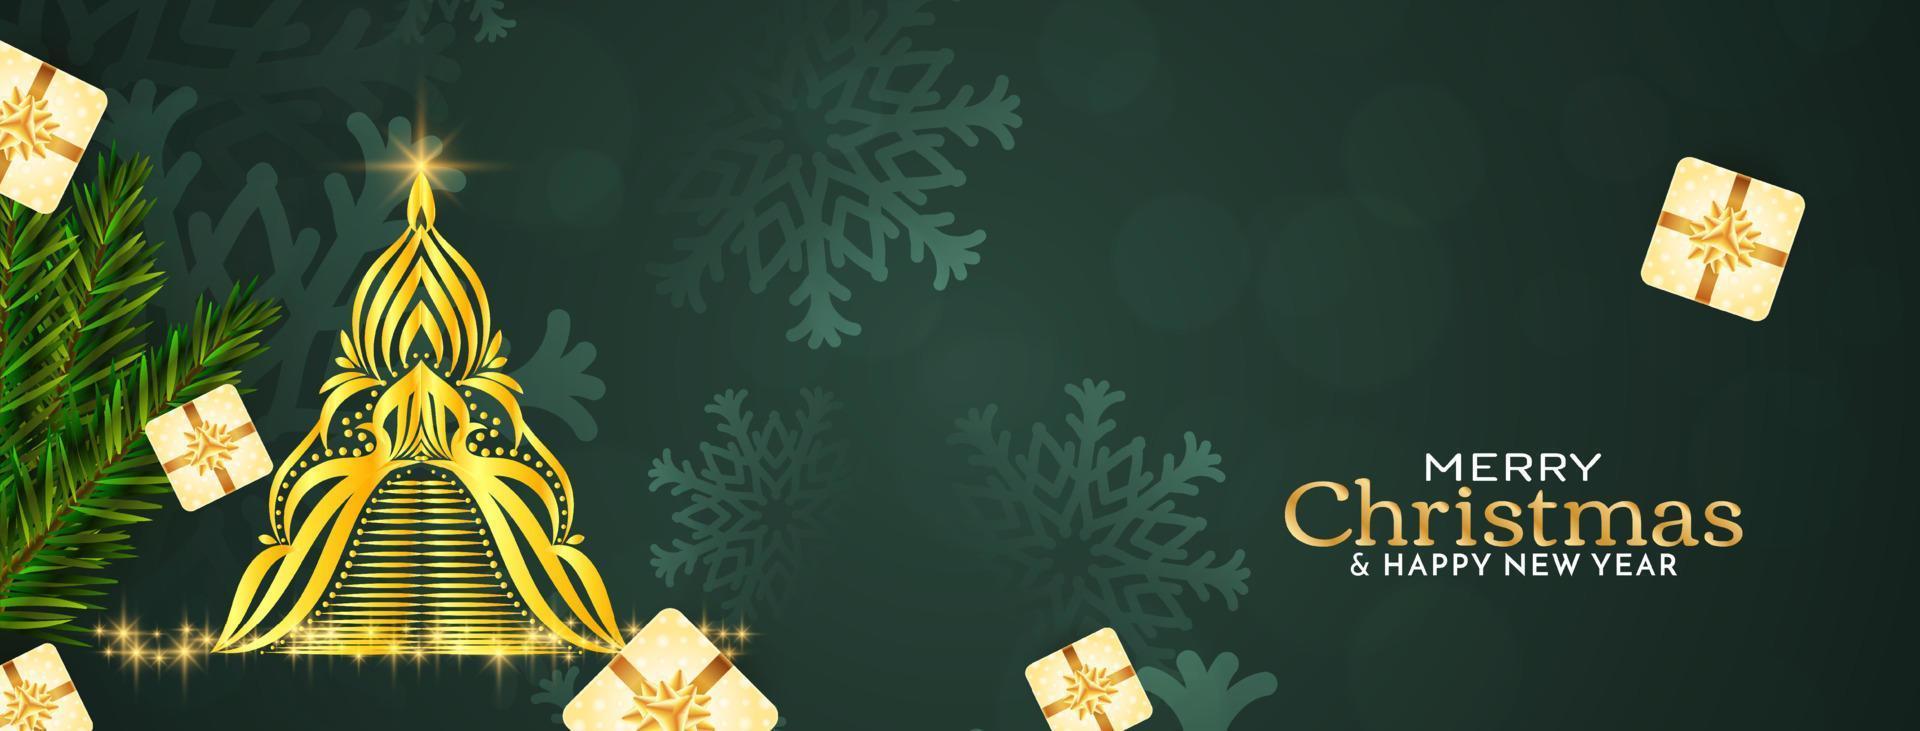 Merry Christmas festival celebartion elegant banner design vector